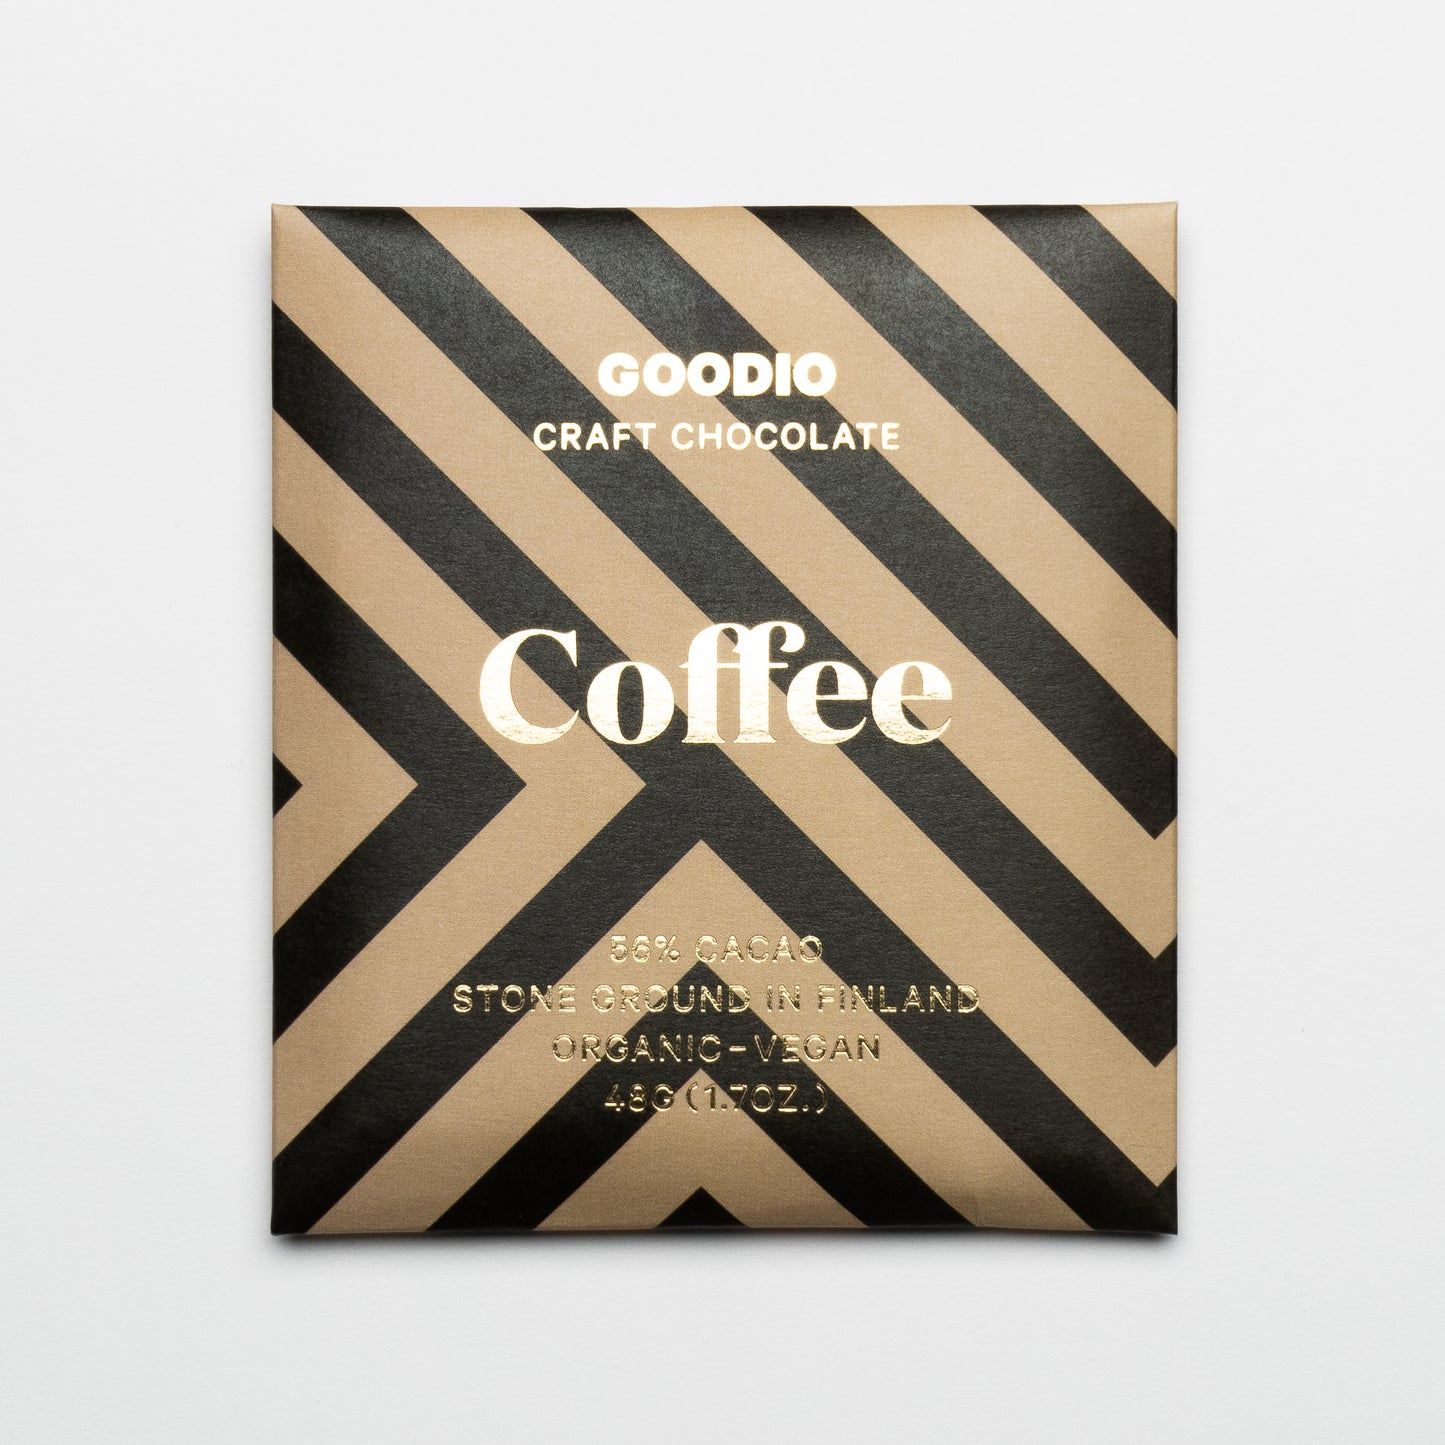 Goodio Coffee Chocolate 56%